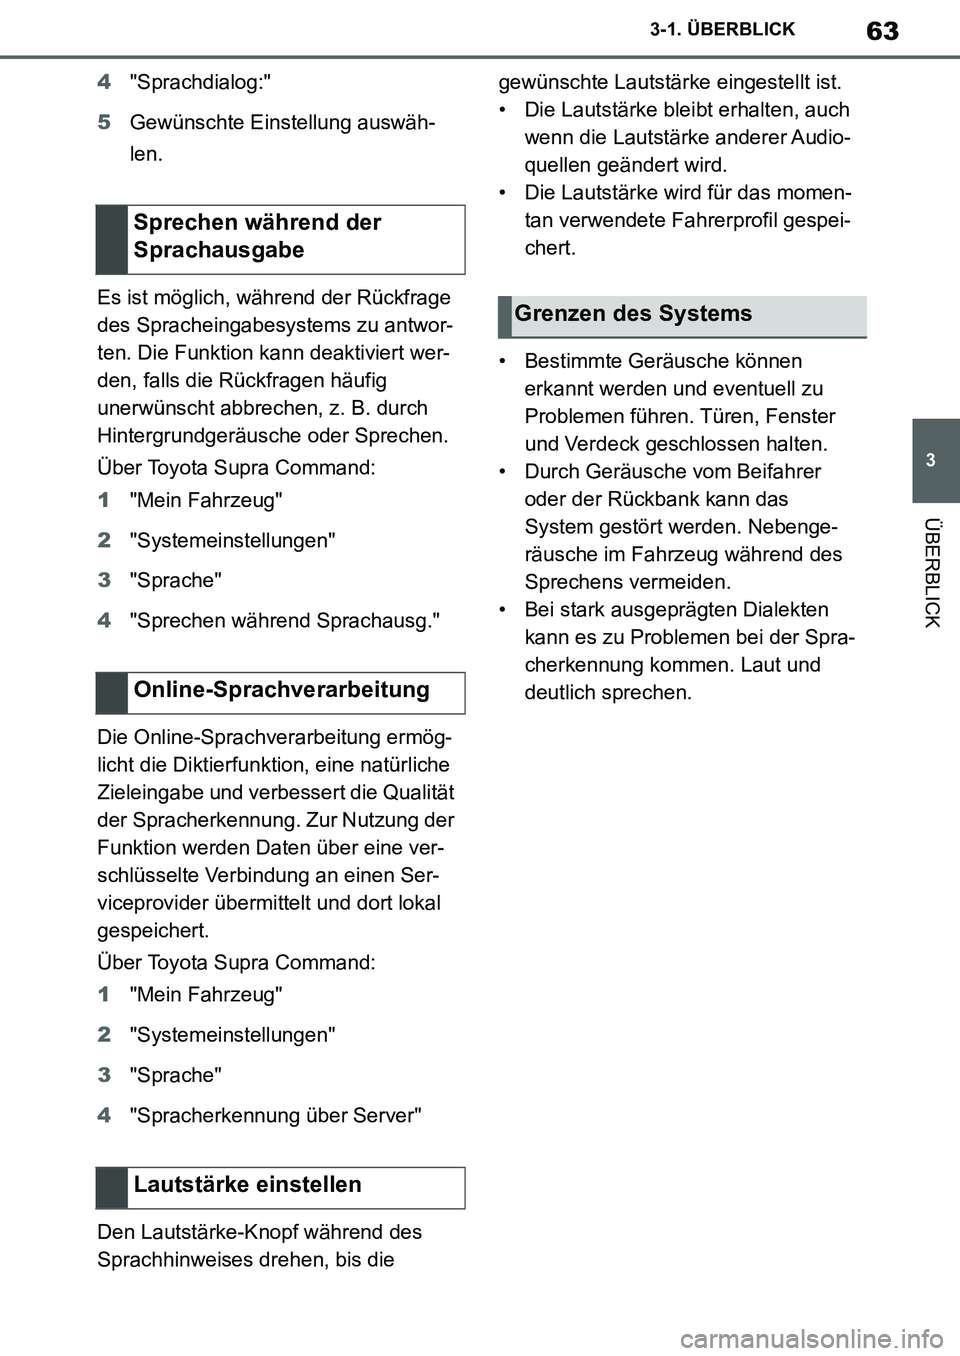 TOYOTA SUPRA 2020  Betriebsanleitungen (in German) 63
3
Supra Owners Manual_EM
3-1. ÜBERBLICK
ÜBERBLICK
4"Sprachdialog:"
5Gewünschte Einstellung auswäh-
len.
Es ist möglich, während der Rückfrage 
des Spracheingabesystems zu antwor-
ten. Die F